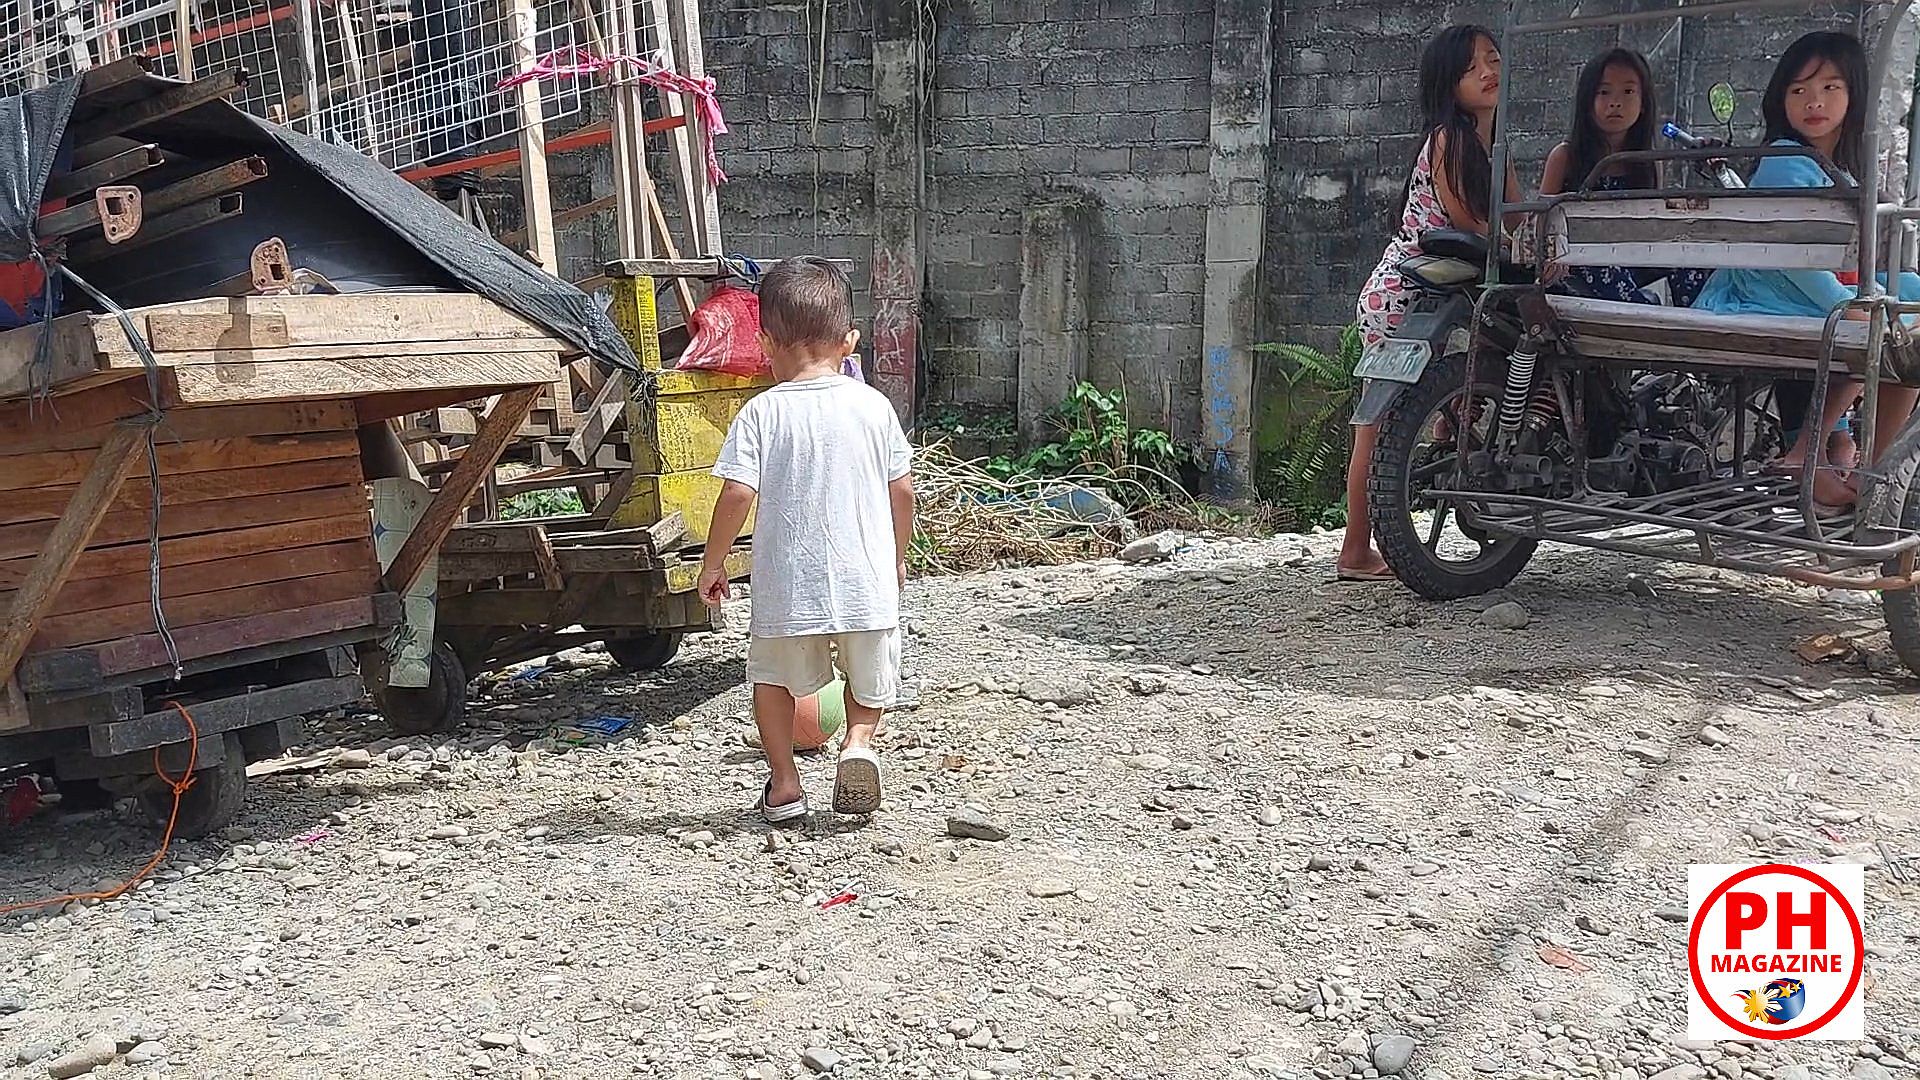 PHILIPPINEN MAGAZIN - FOTOSERIE - Kinder im Alltag